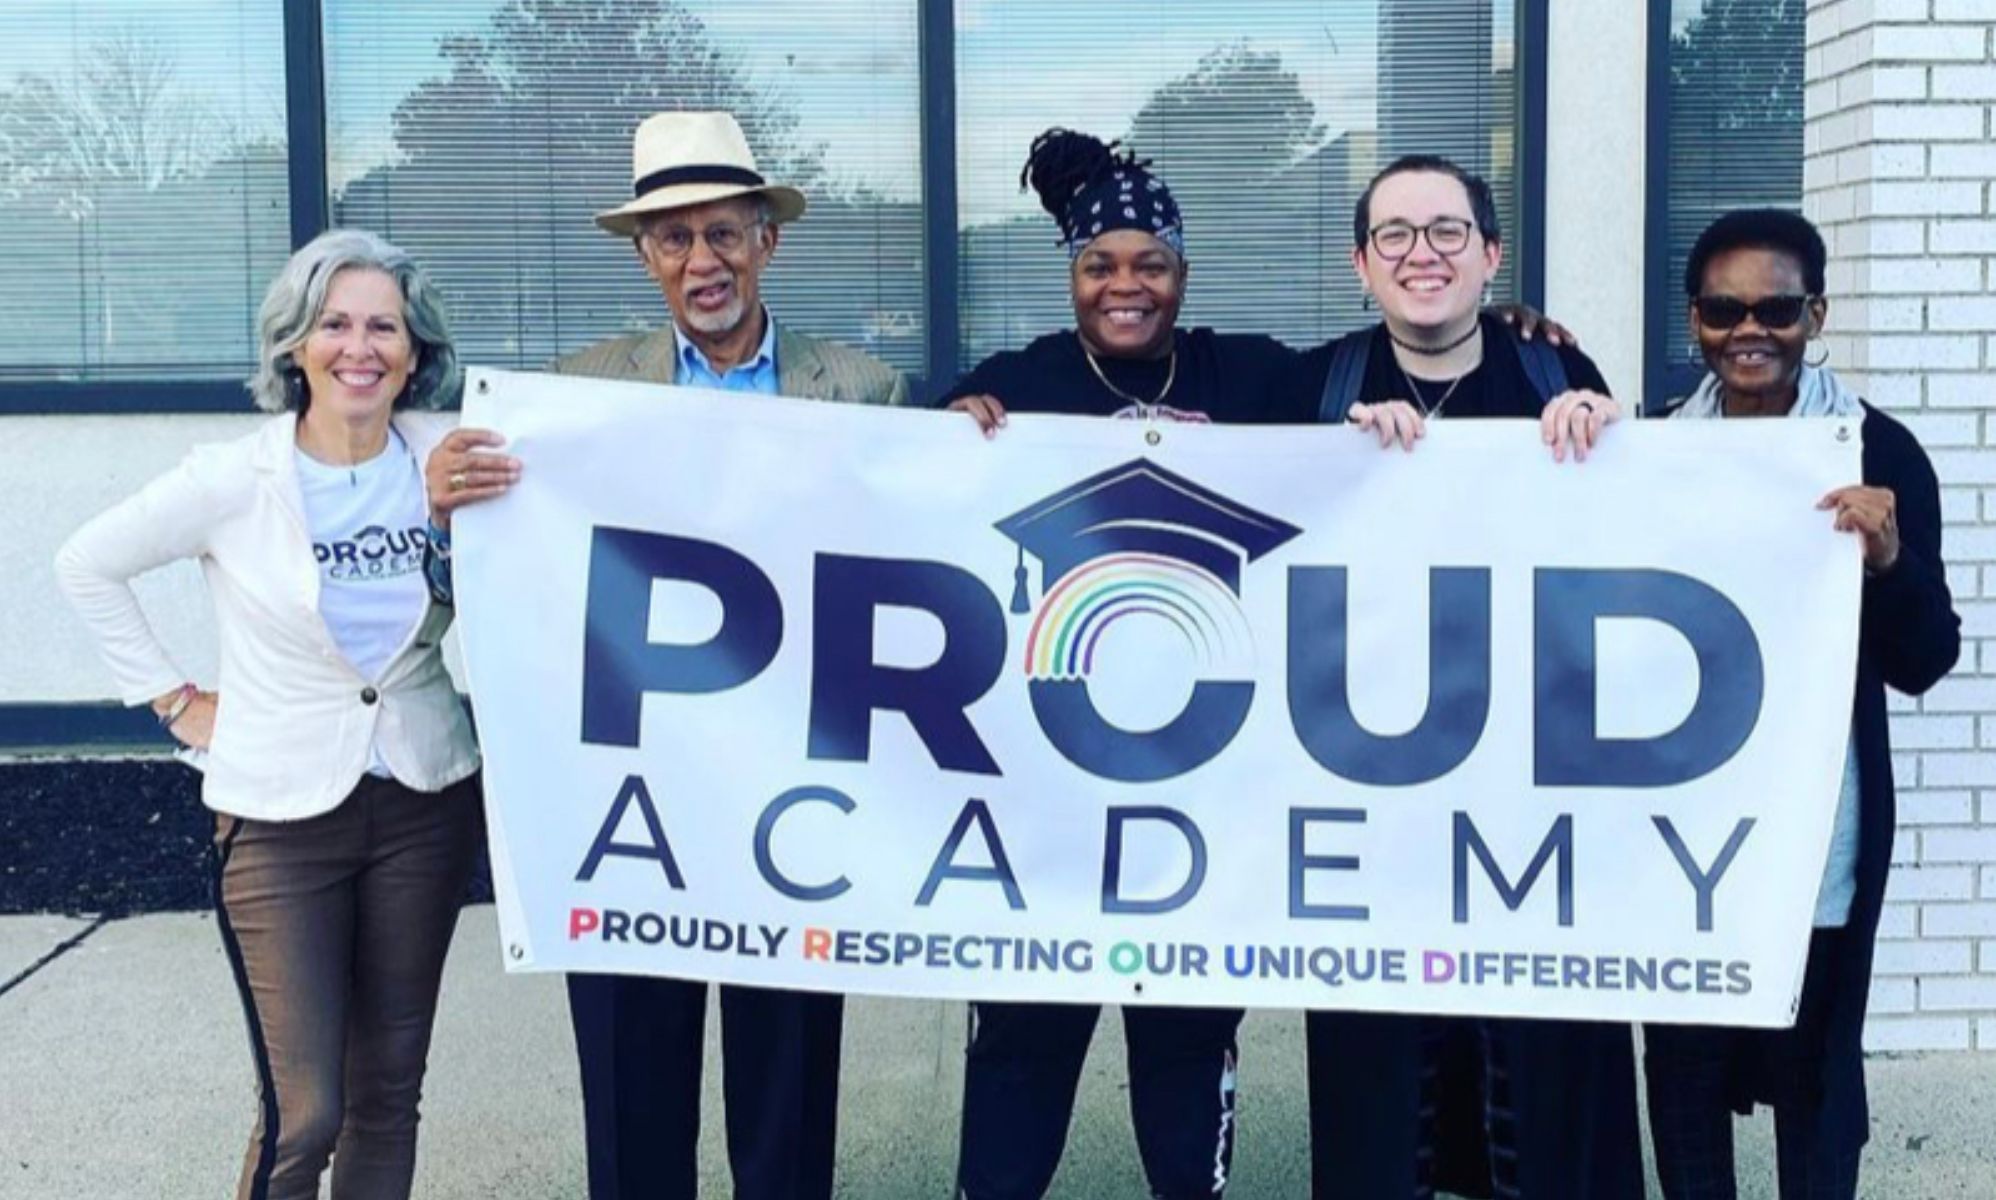 Una profesora lesbiana ha creado un colegio libre de acoso LGTB+